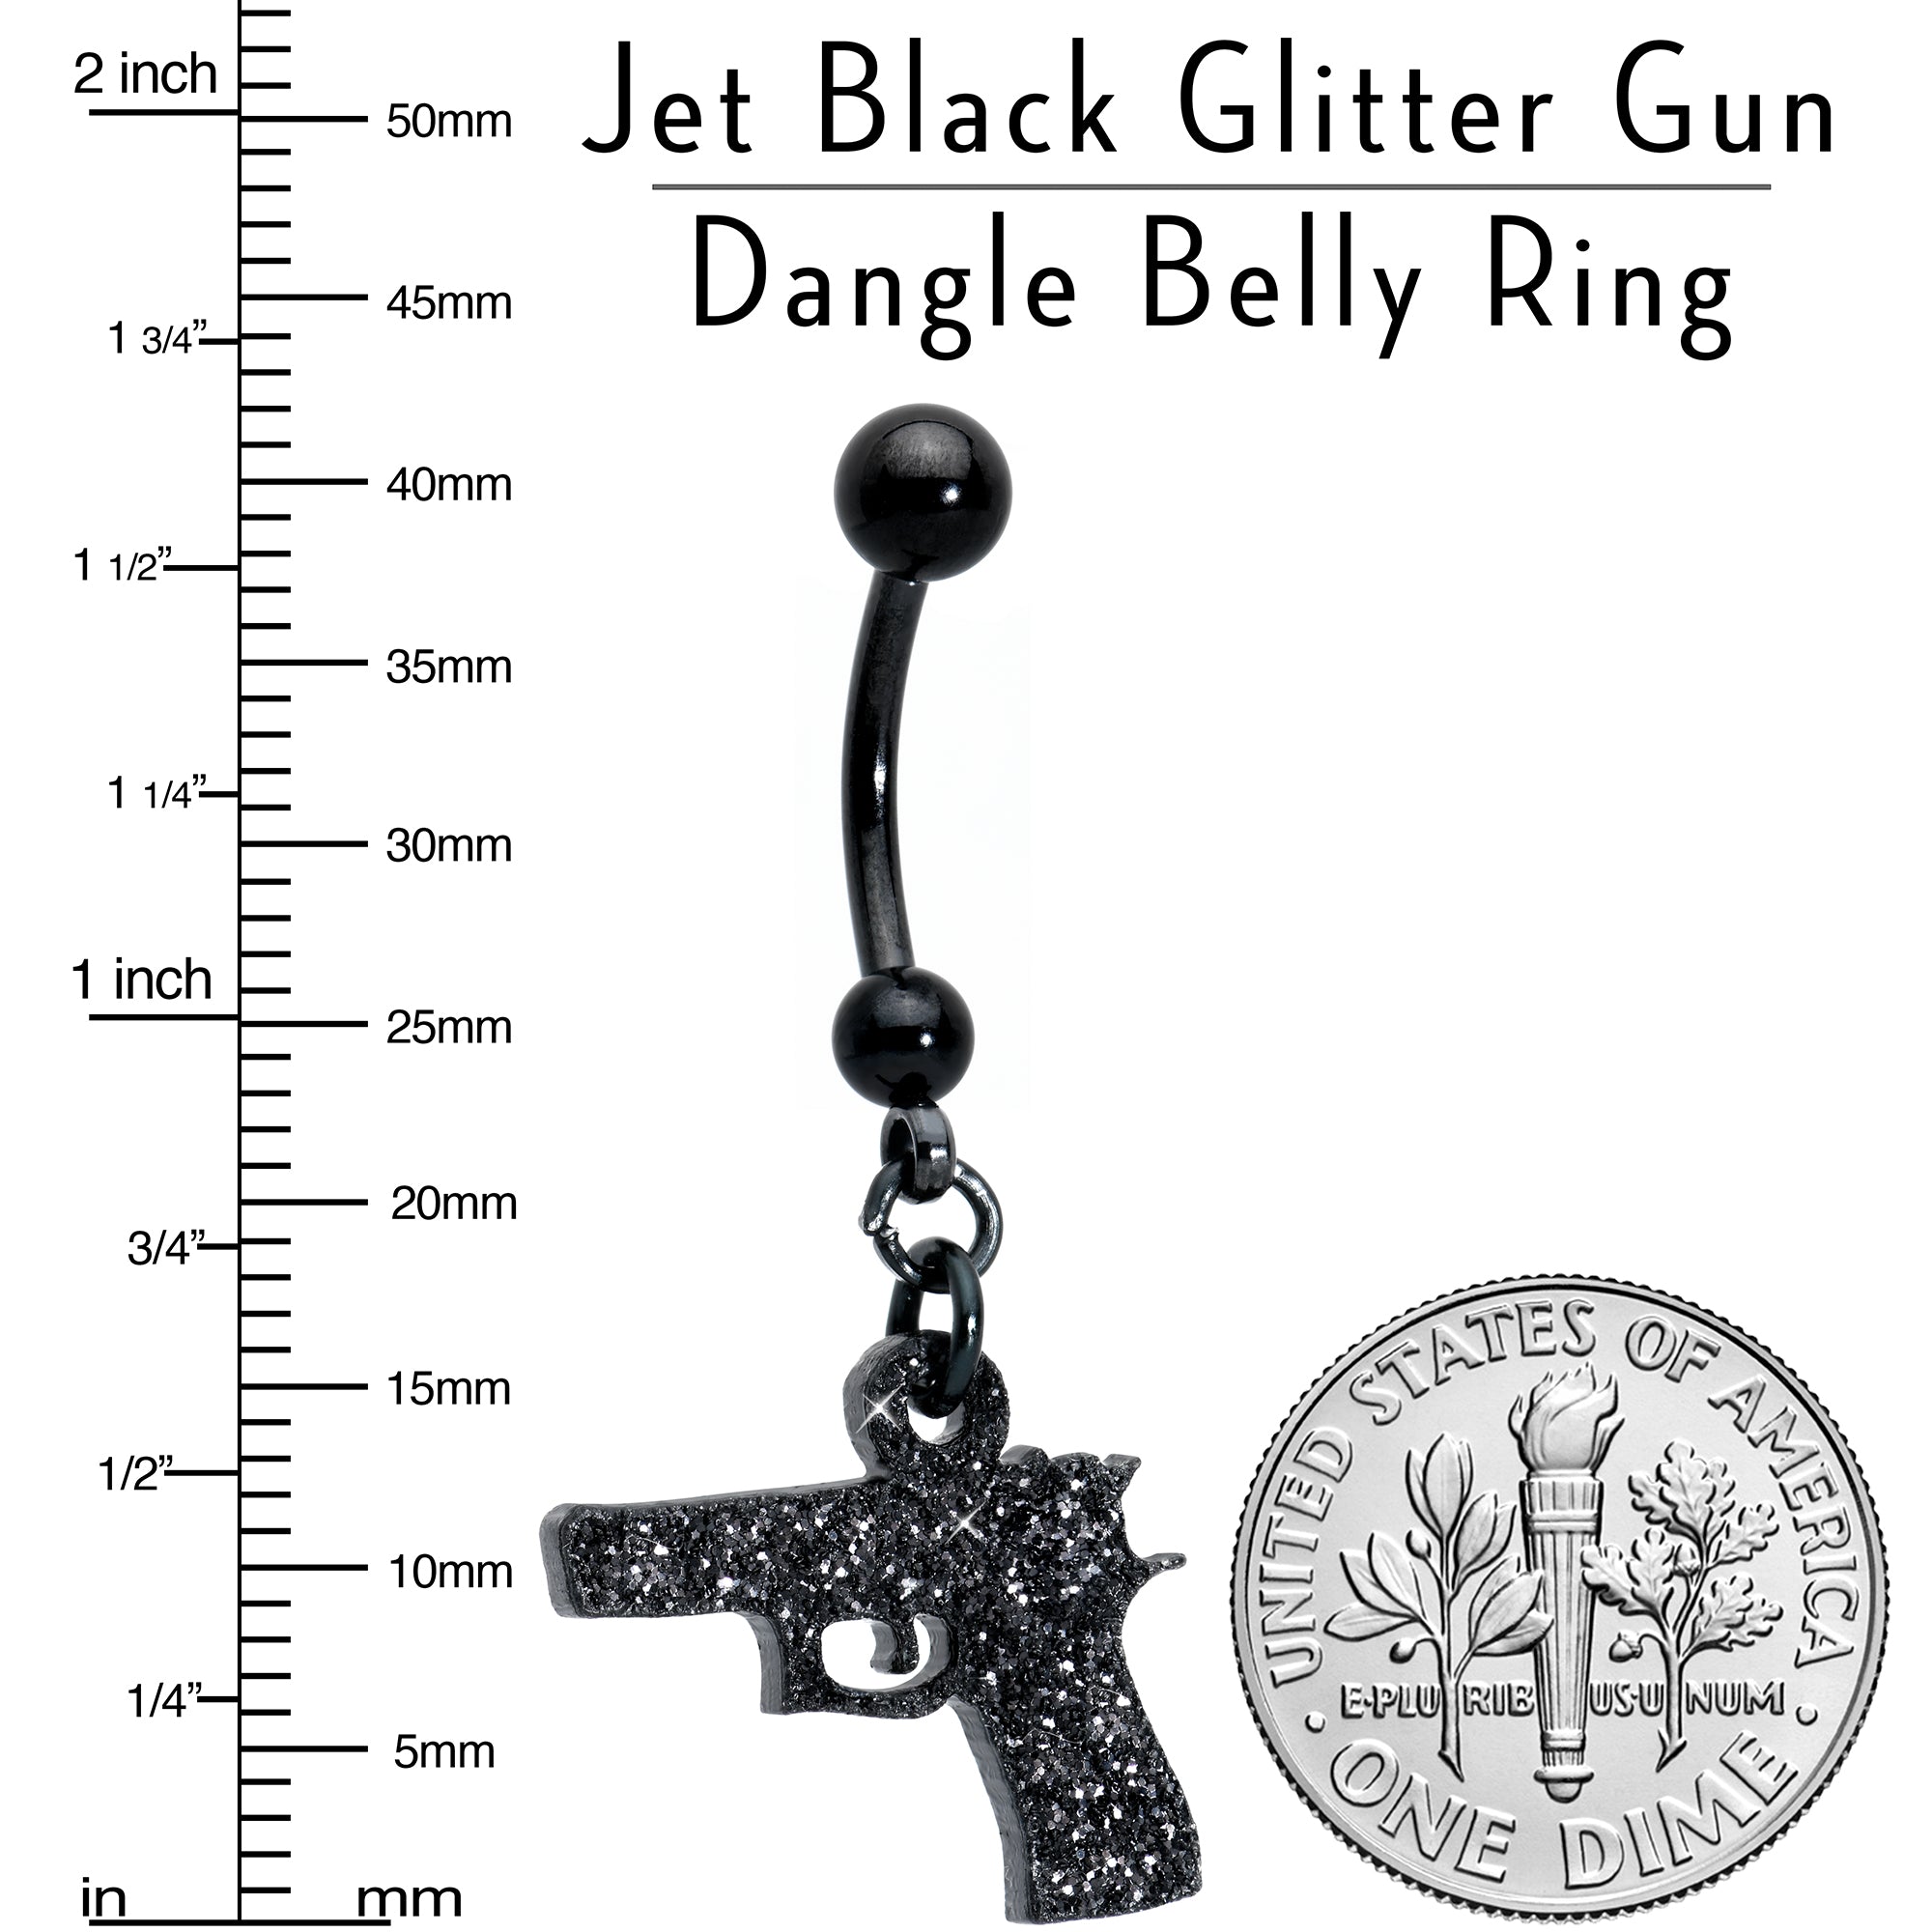 Jet Black Glitter Gun Dangle Belly Ring